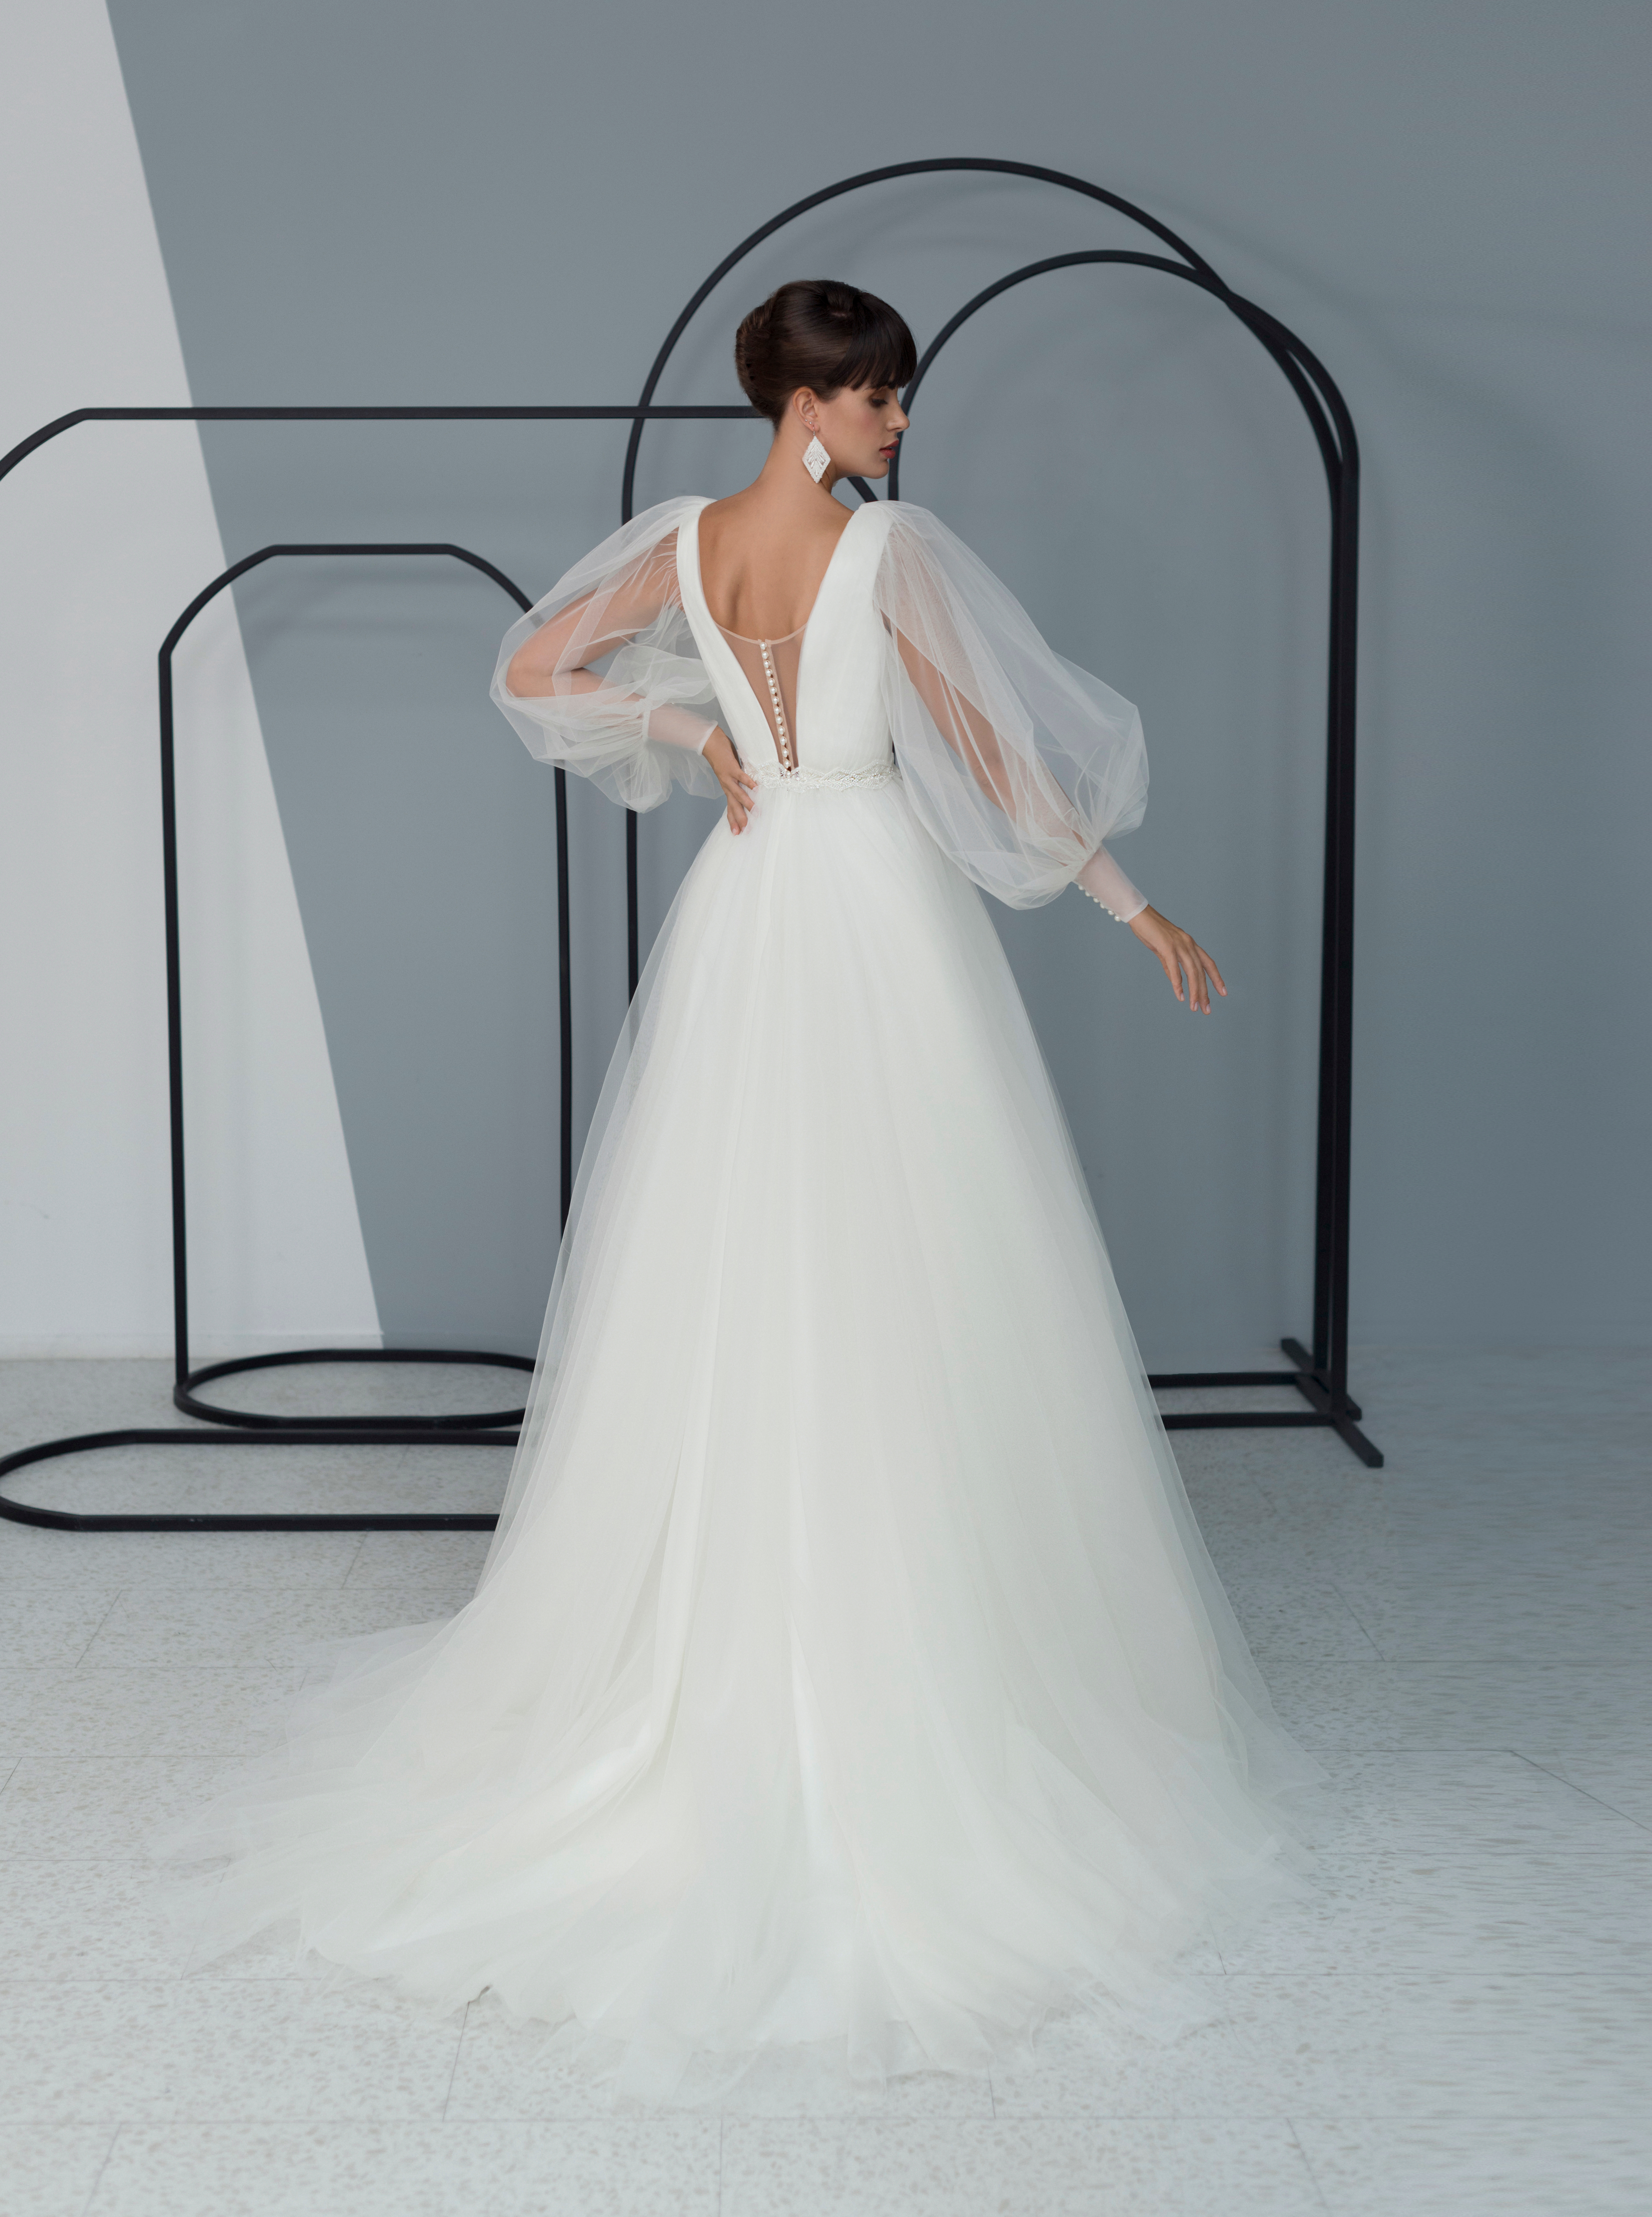 Купить свадебное платье «Изара» Мэрри Марк из коллекции 2022 года в Мэри Трюфель